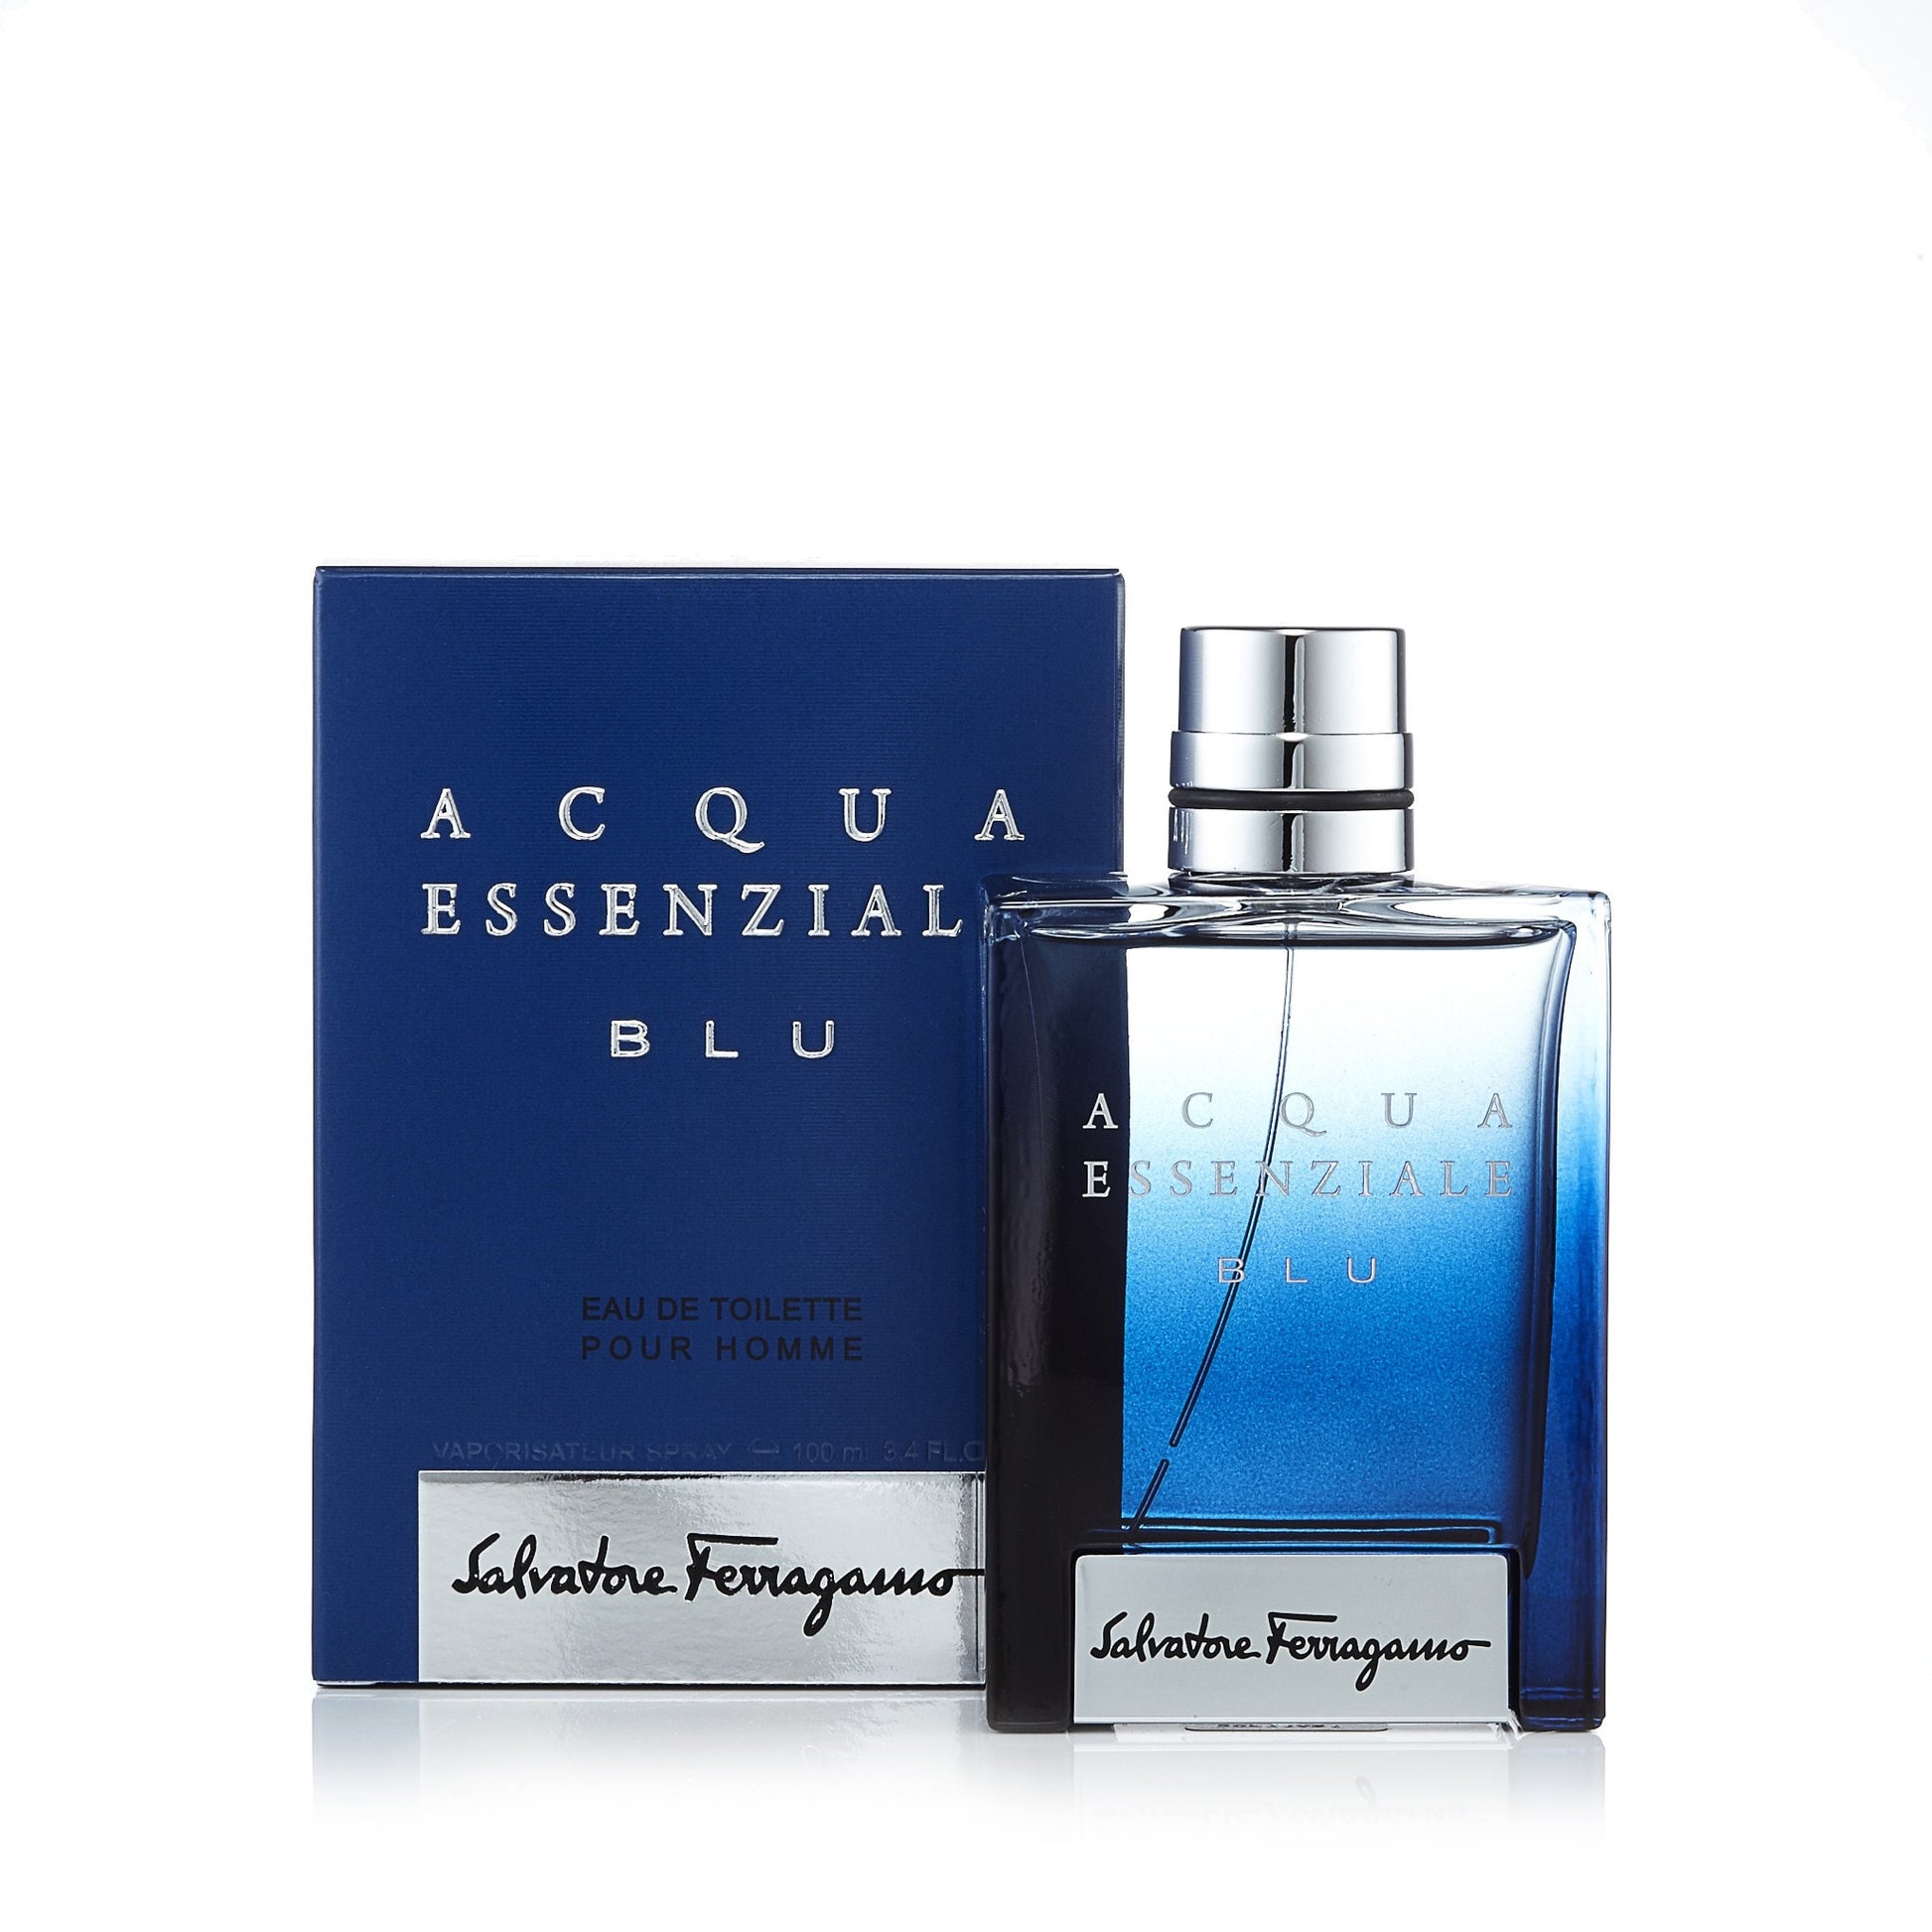 Acqua Essenziale Blu Eau de Toilette Spray for Men by Ferragamo, Product image 4